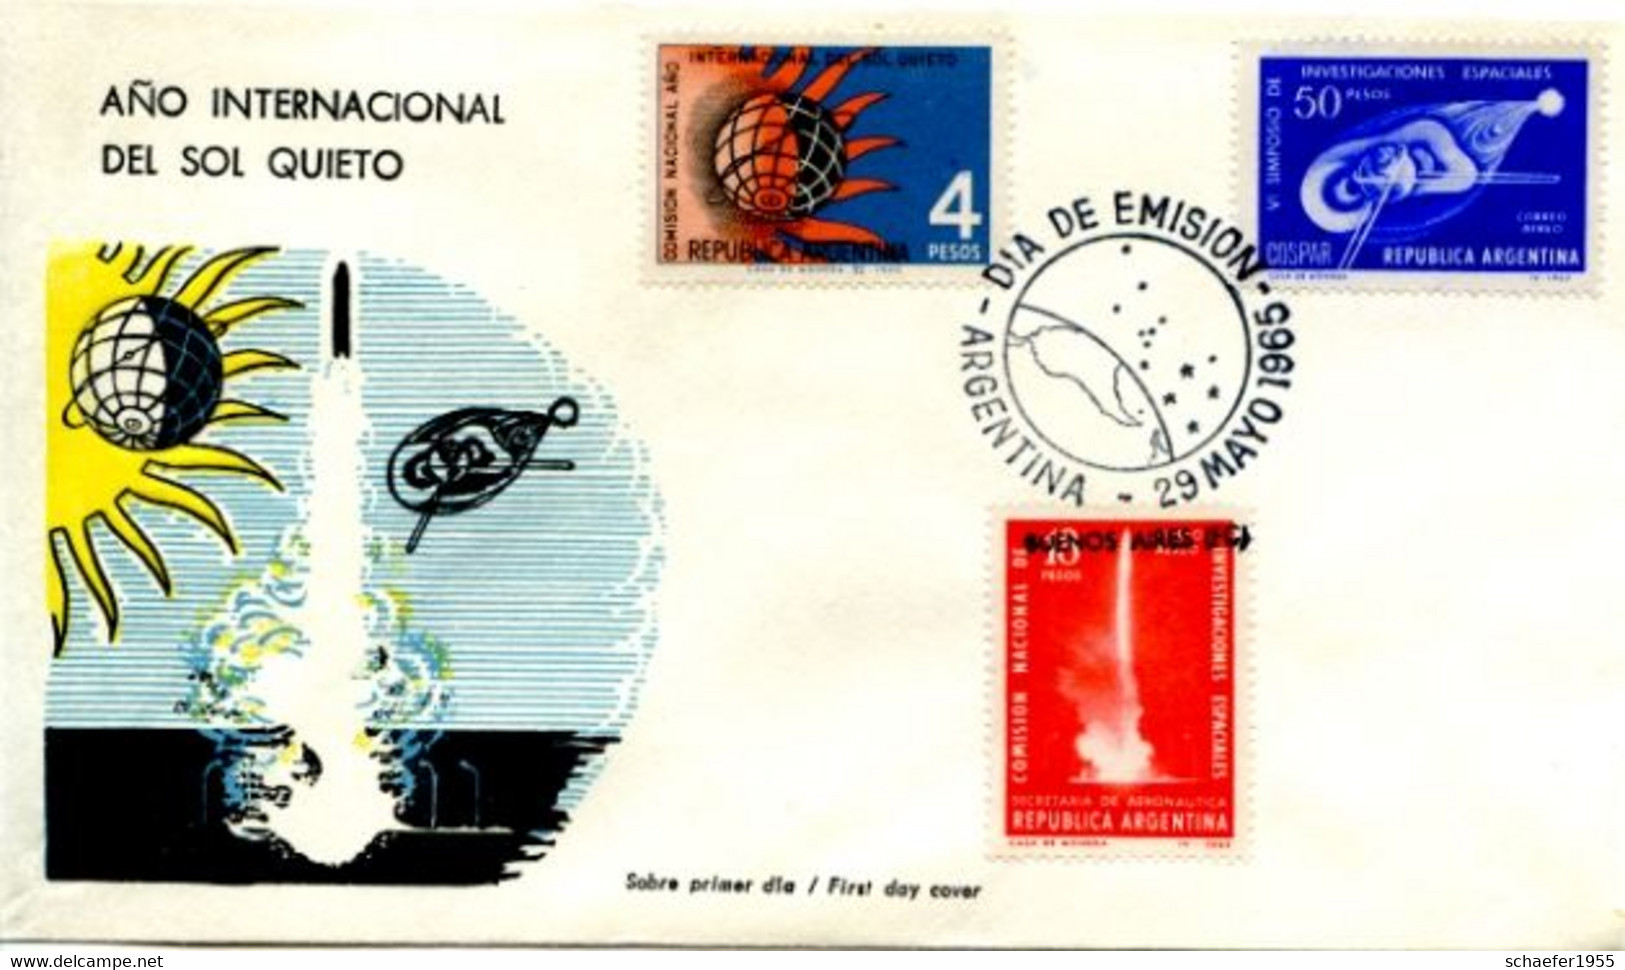 Argentina, Argentinien 1965 2x FDC + Stamps Perf. - Südamerika